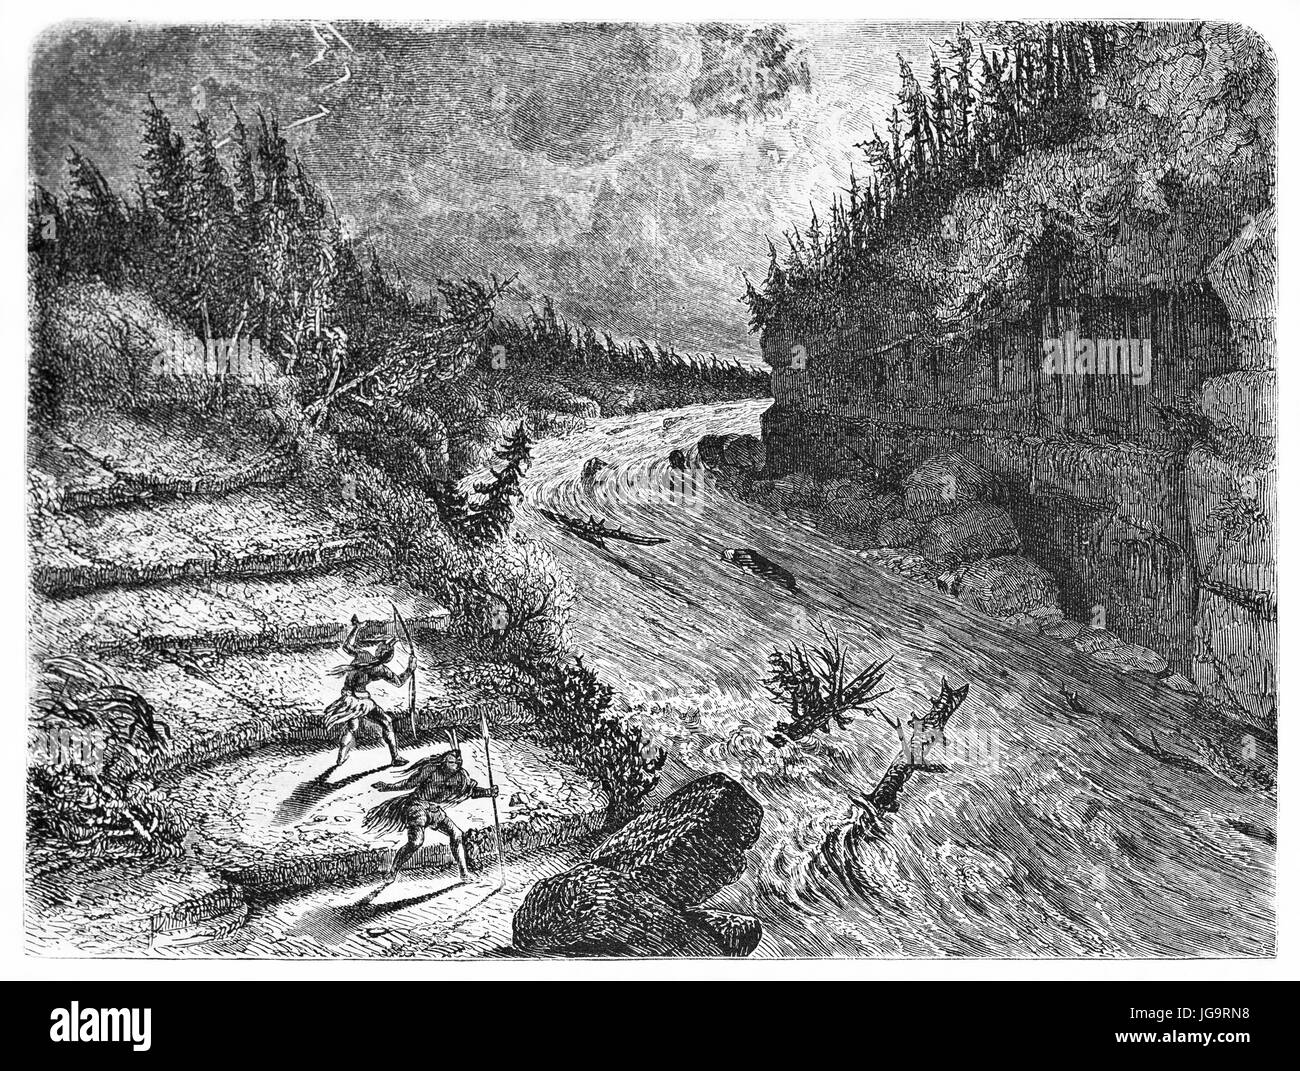 Montmorency river violent rapids flow in a night storm, Canada. Ancient grey tone etching style art by Huet, Le Tour du Monde, Paris, 1861 Stock Photo